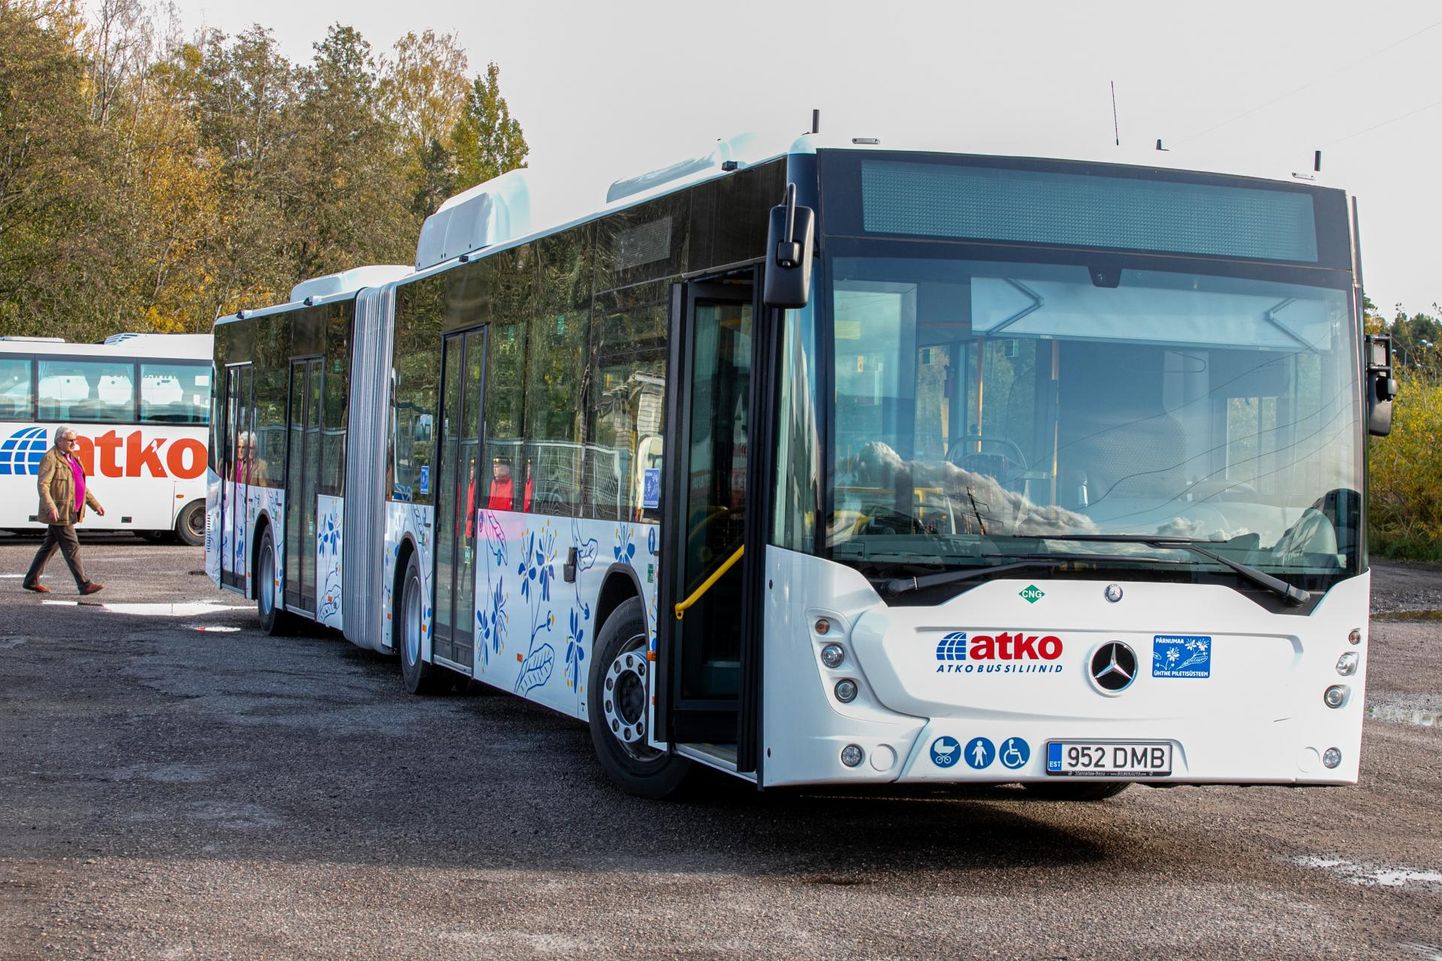 Kuigi kõik uued Atko bussid pidid liinile minema 1. oktoobrist, sõidab praegu viiest moodsast lõõtsbussist üks ja teine on selleks valmis lähipäevil.